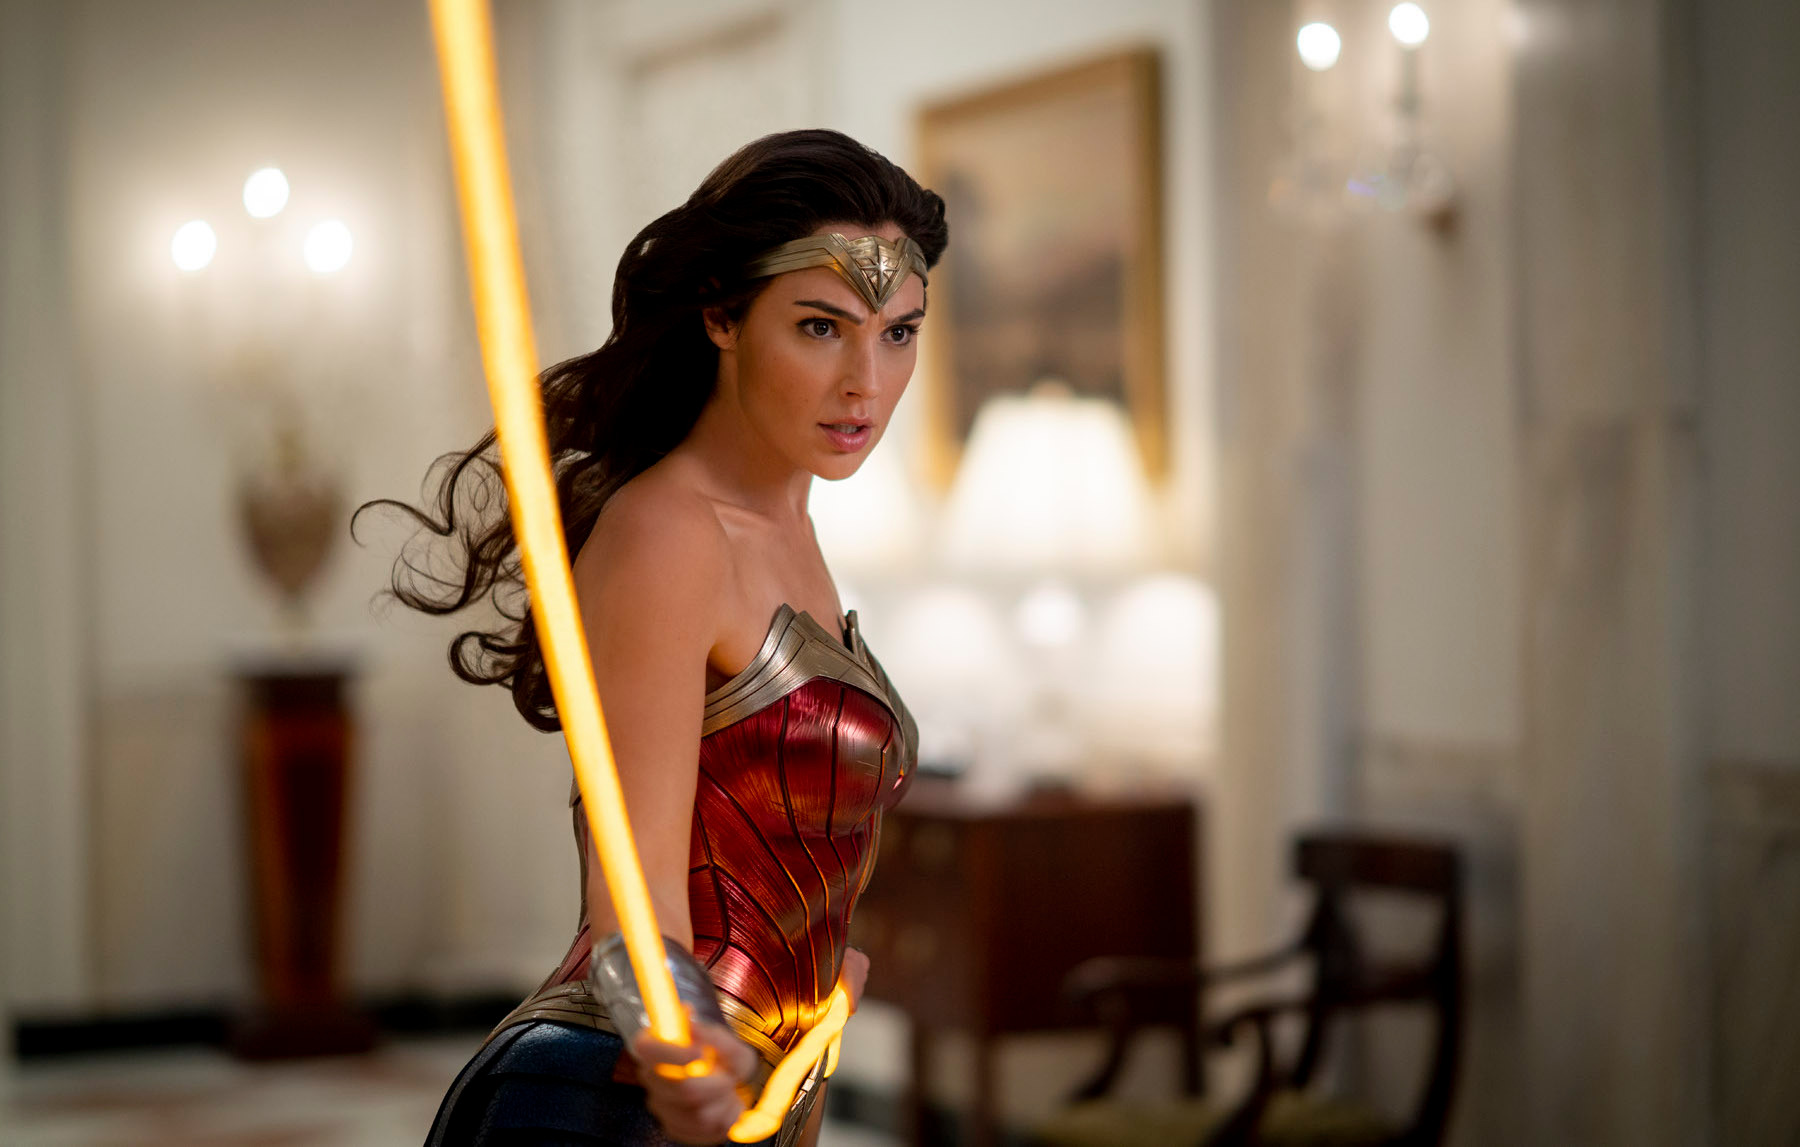 Gal Gadot stars as Woman Woman in Wonder Woman 1984. (Jenkins, Patty, dir. Wonder Woman 1984. 2020.)